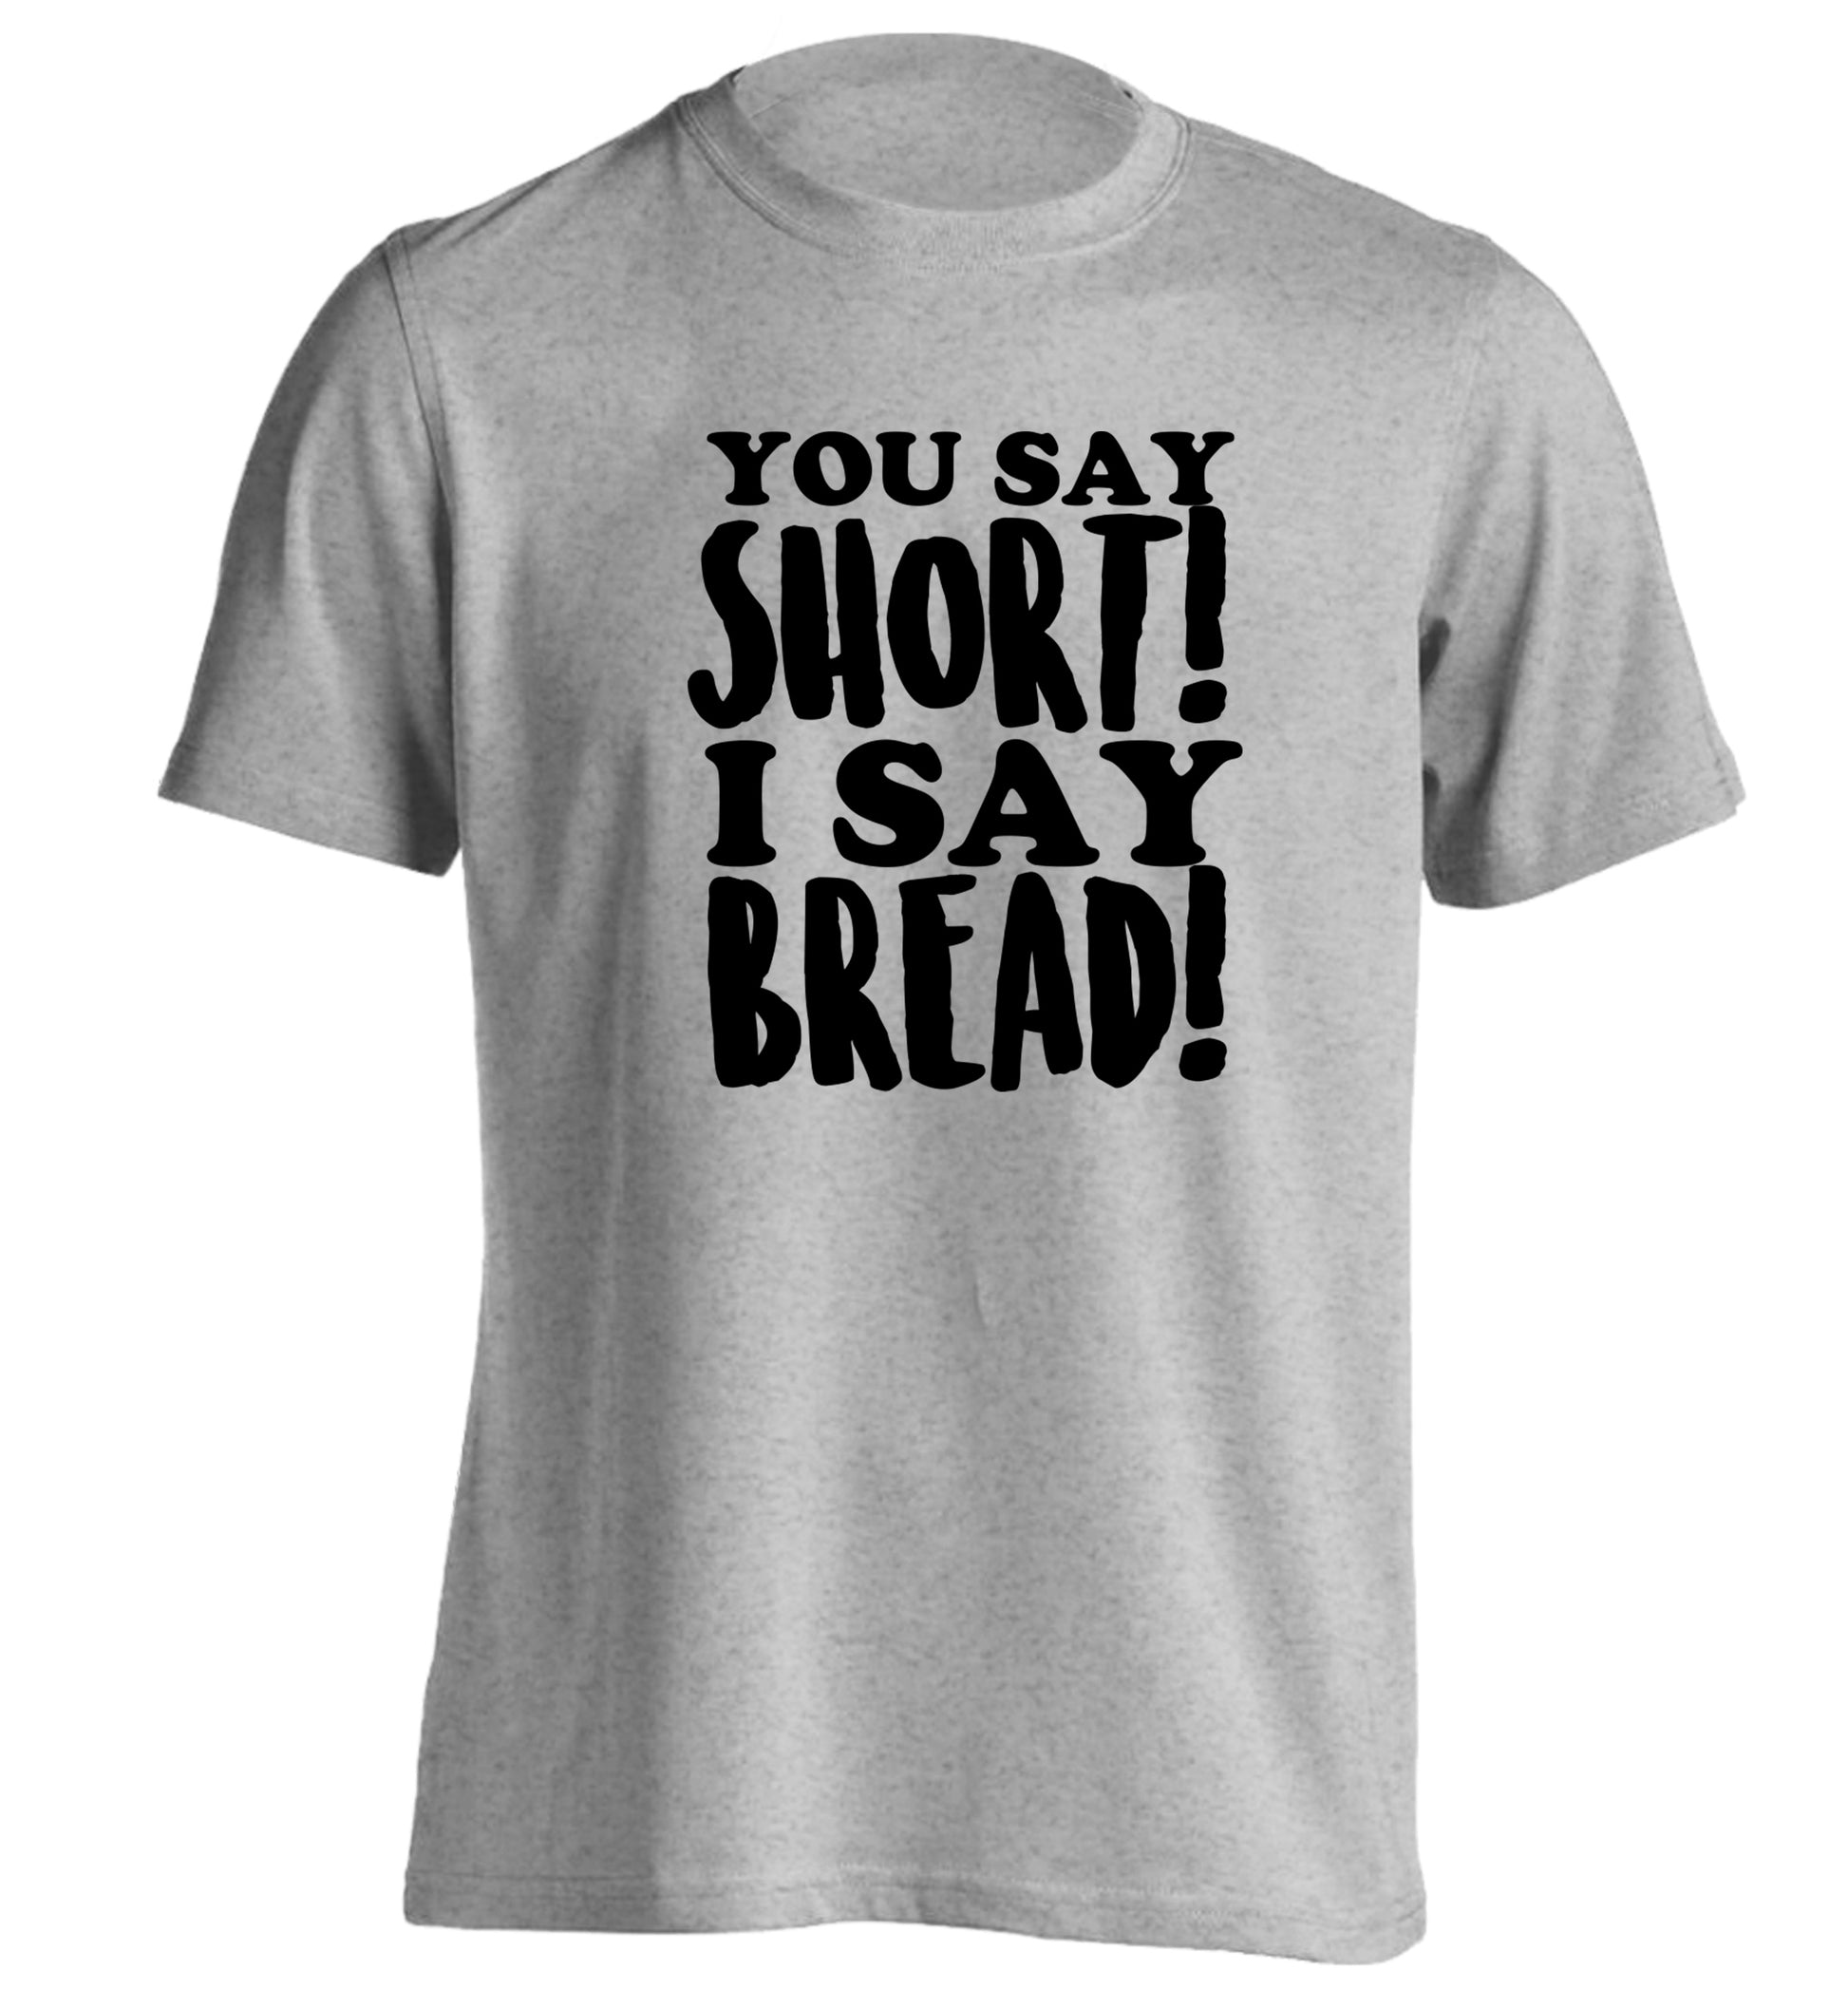 You say short I say bread! adults unisex grey Tshirt 2XL